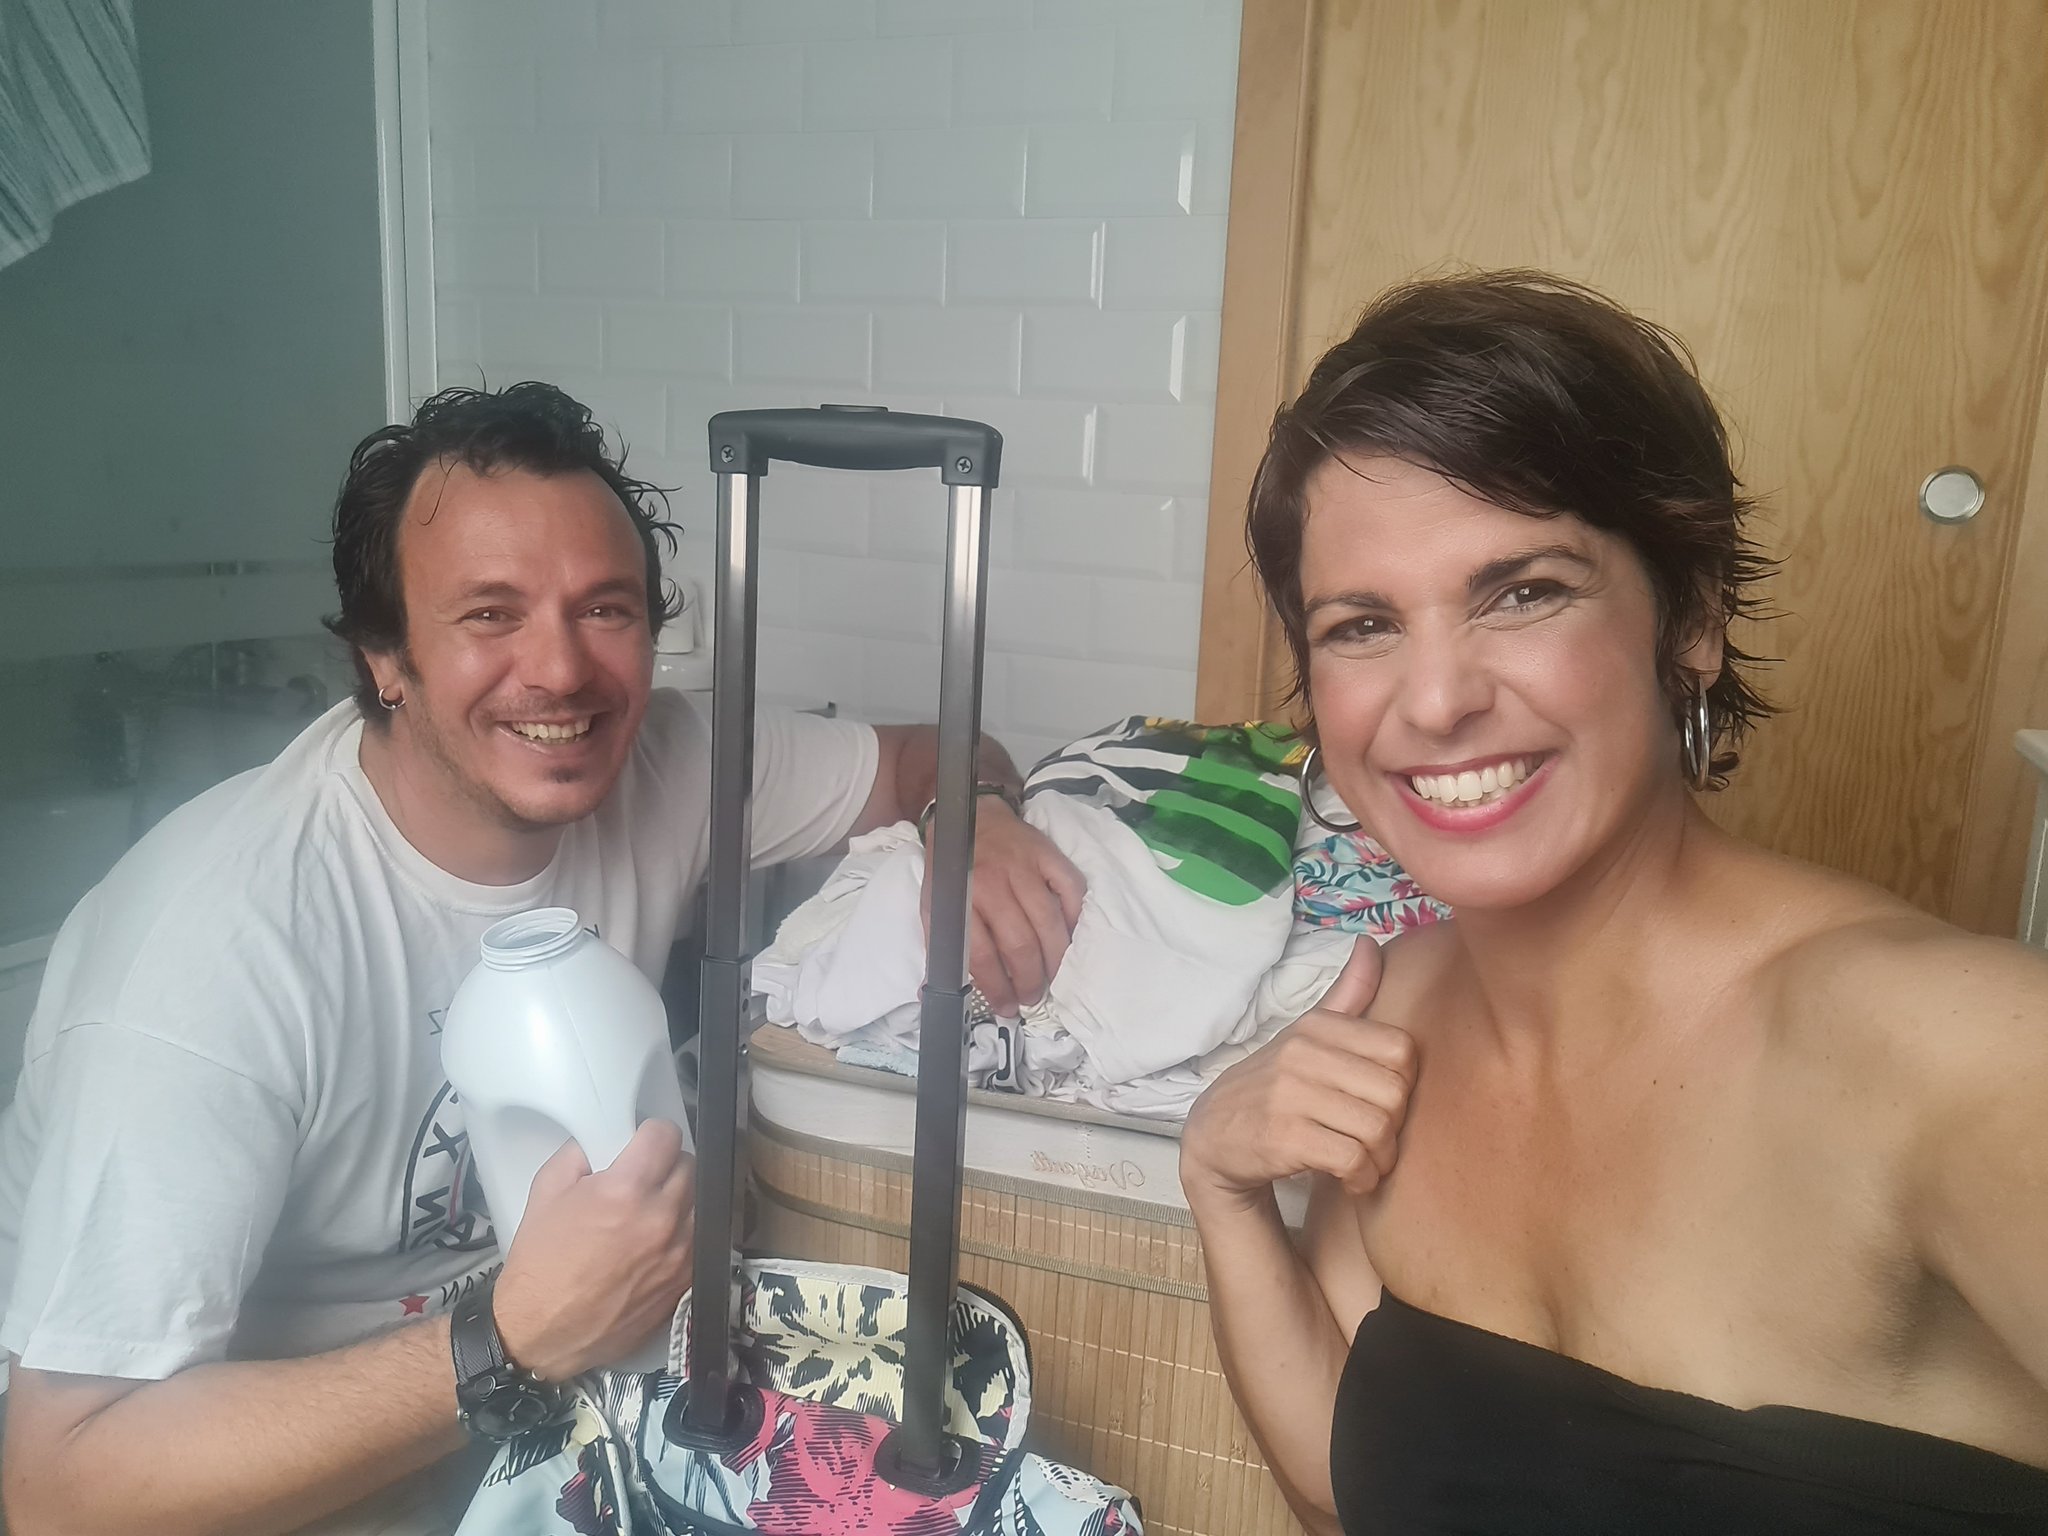 Teresa Rodríguez, la candidata de Adelante Andalucía, ha dedicado su jornada de reflexión a poner lavadoras. Imagen compartida en Twitter